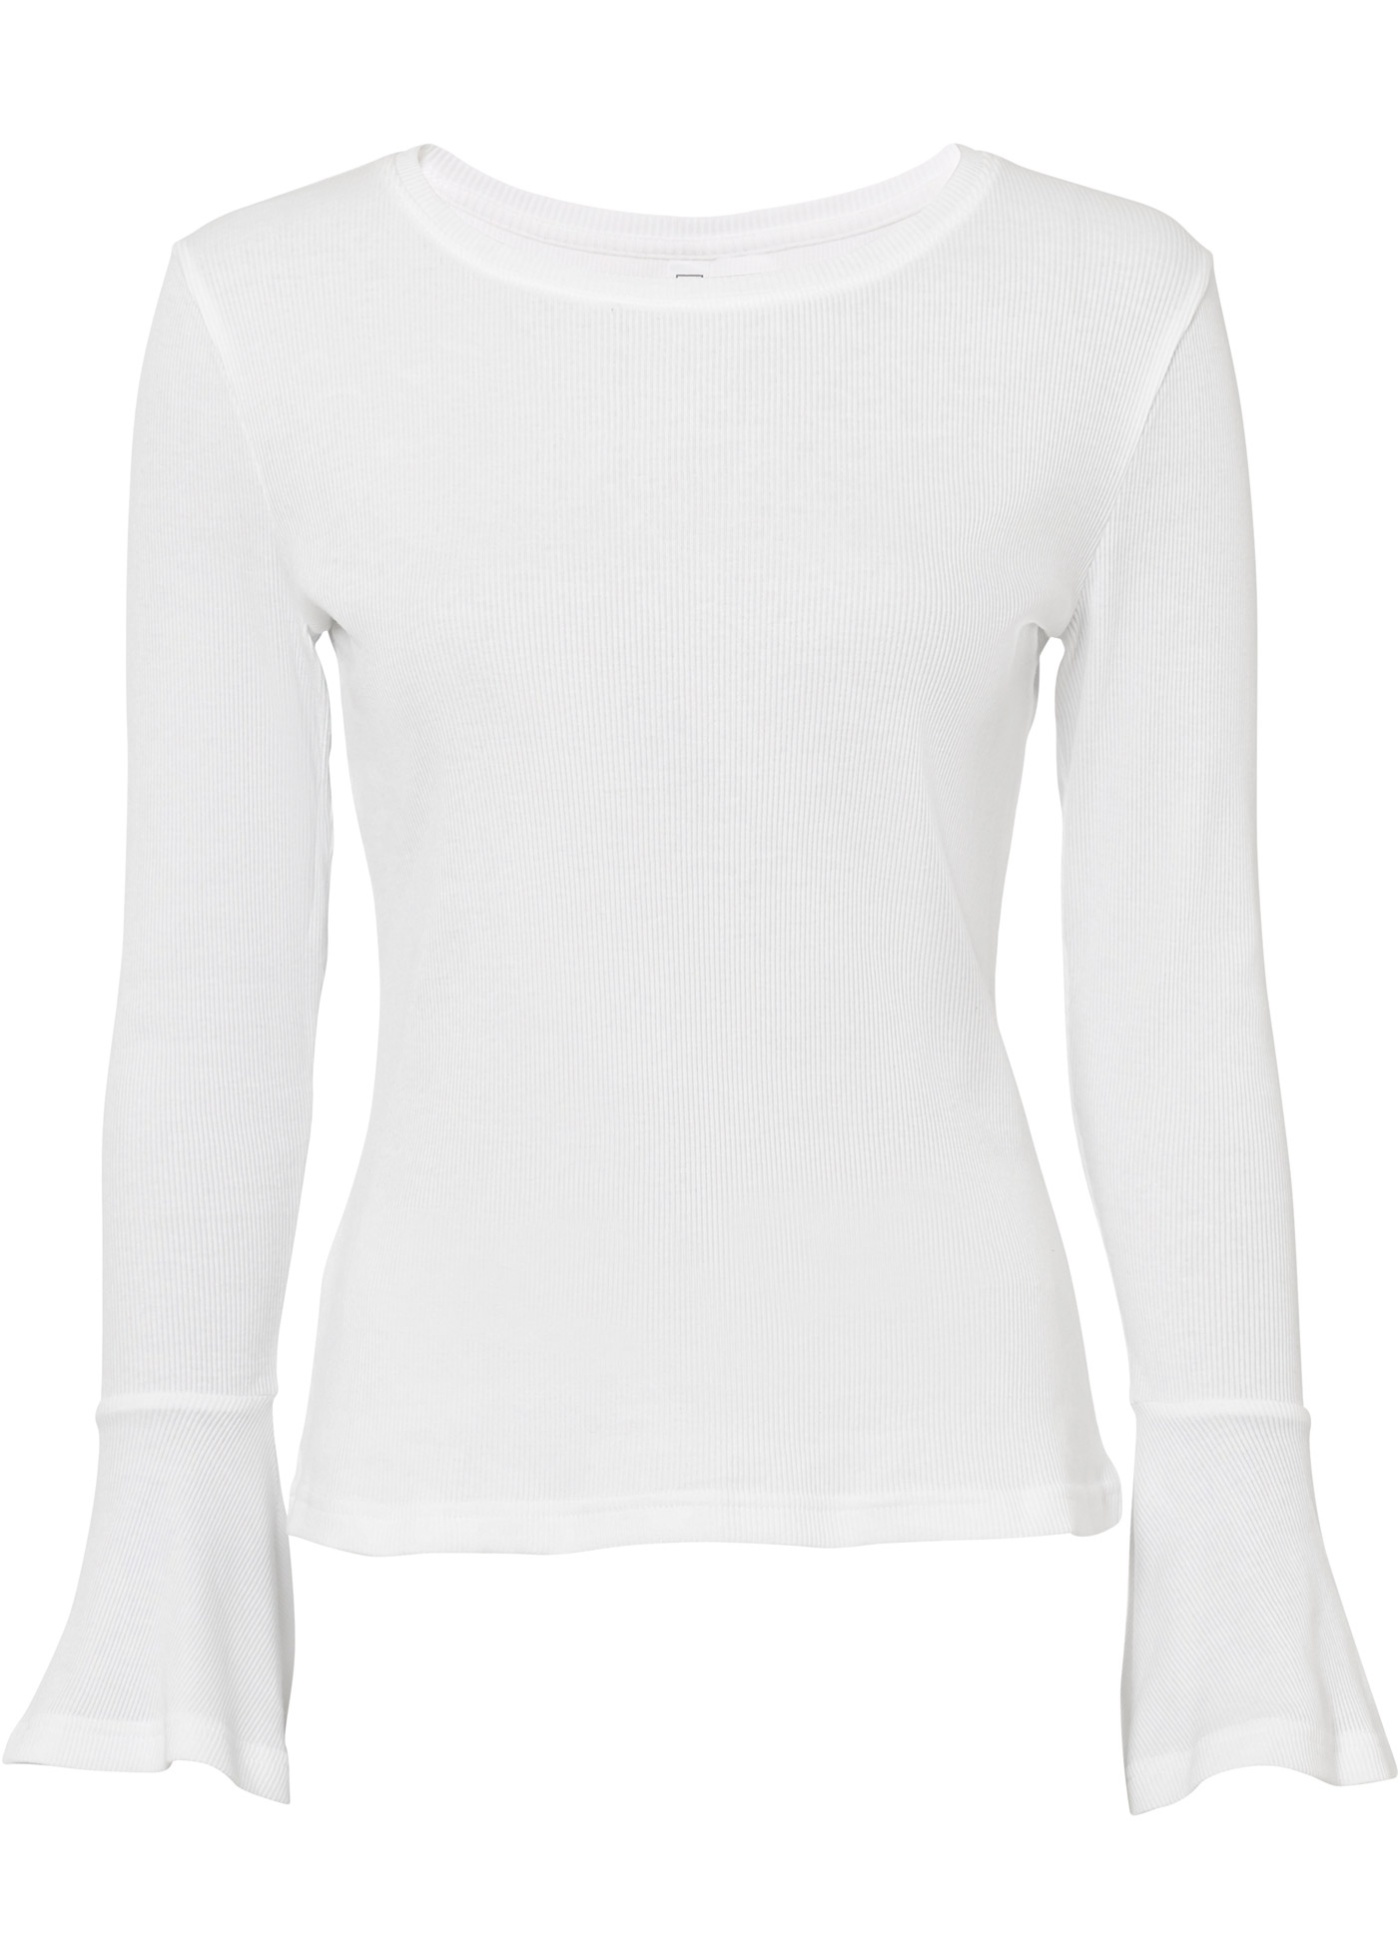 Vrúbkované tričko s rozšírenými rukávmi z bio bavlny Cradle to Cradle Certified® Silber